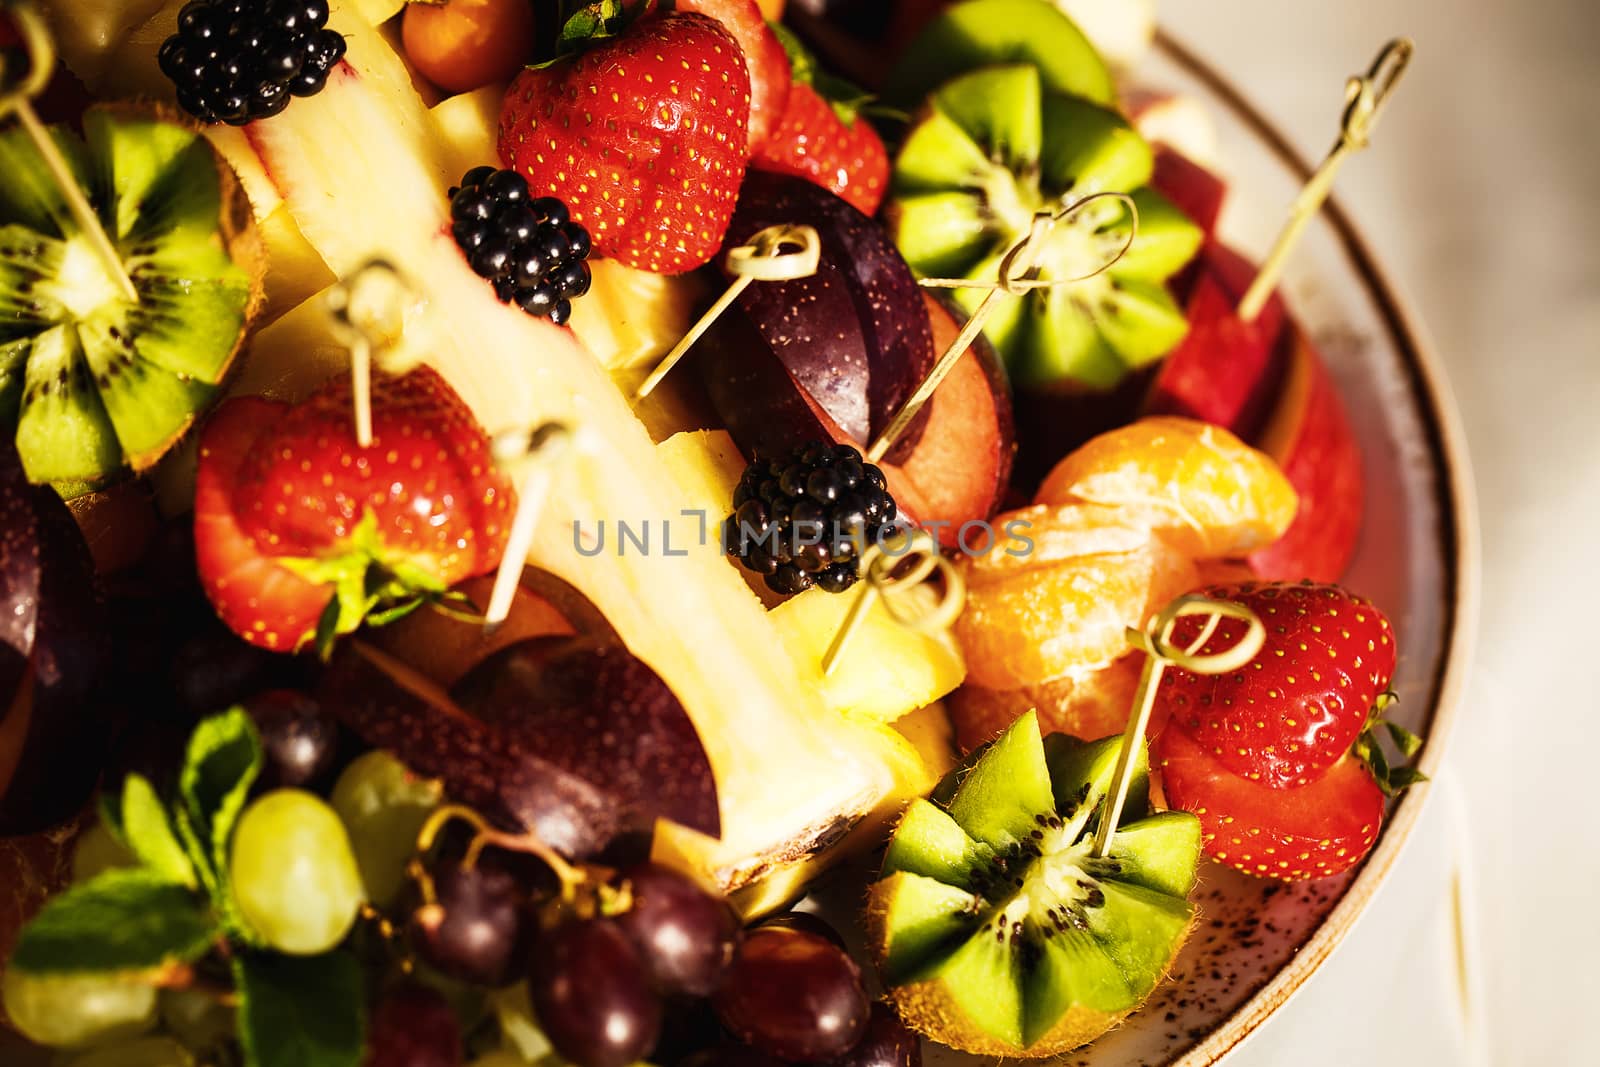 Fruit fresh salad by gorov108